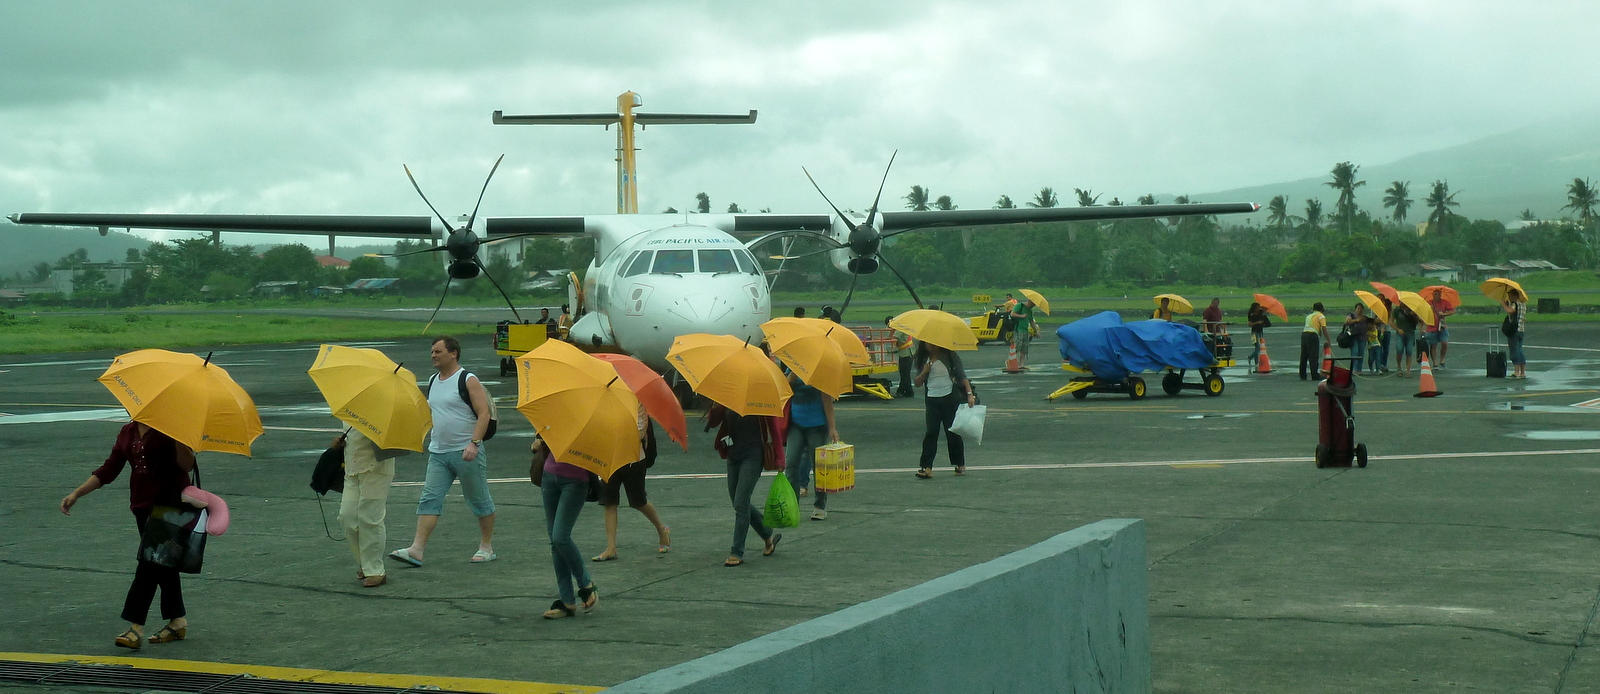 cebu-umbrellas-legazpi-airport